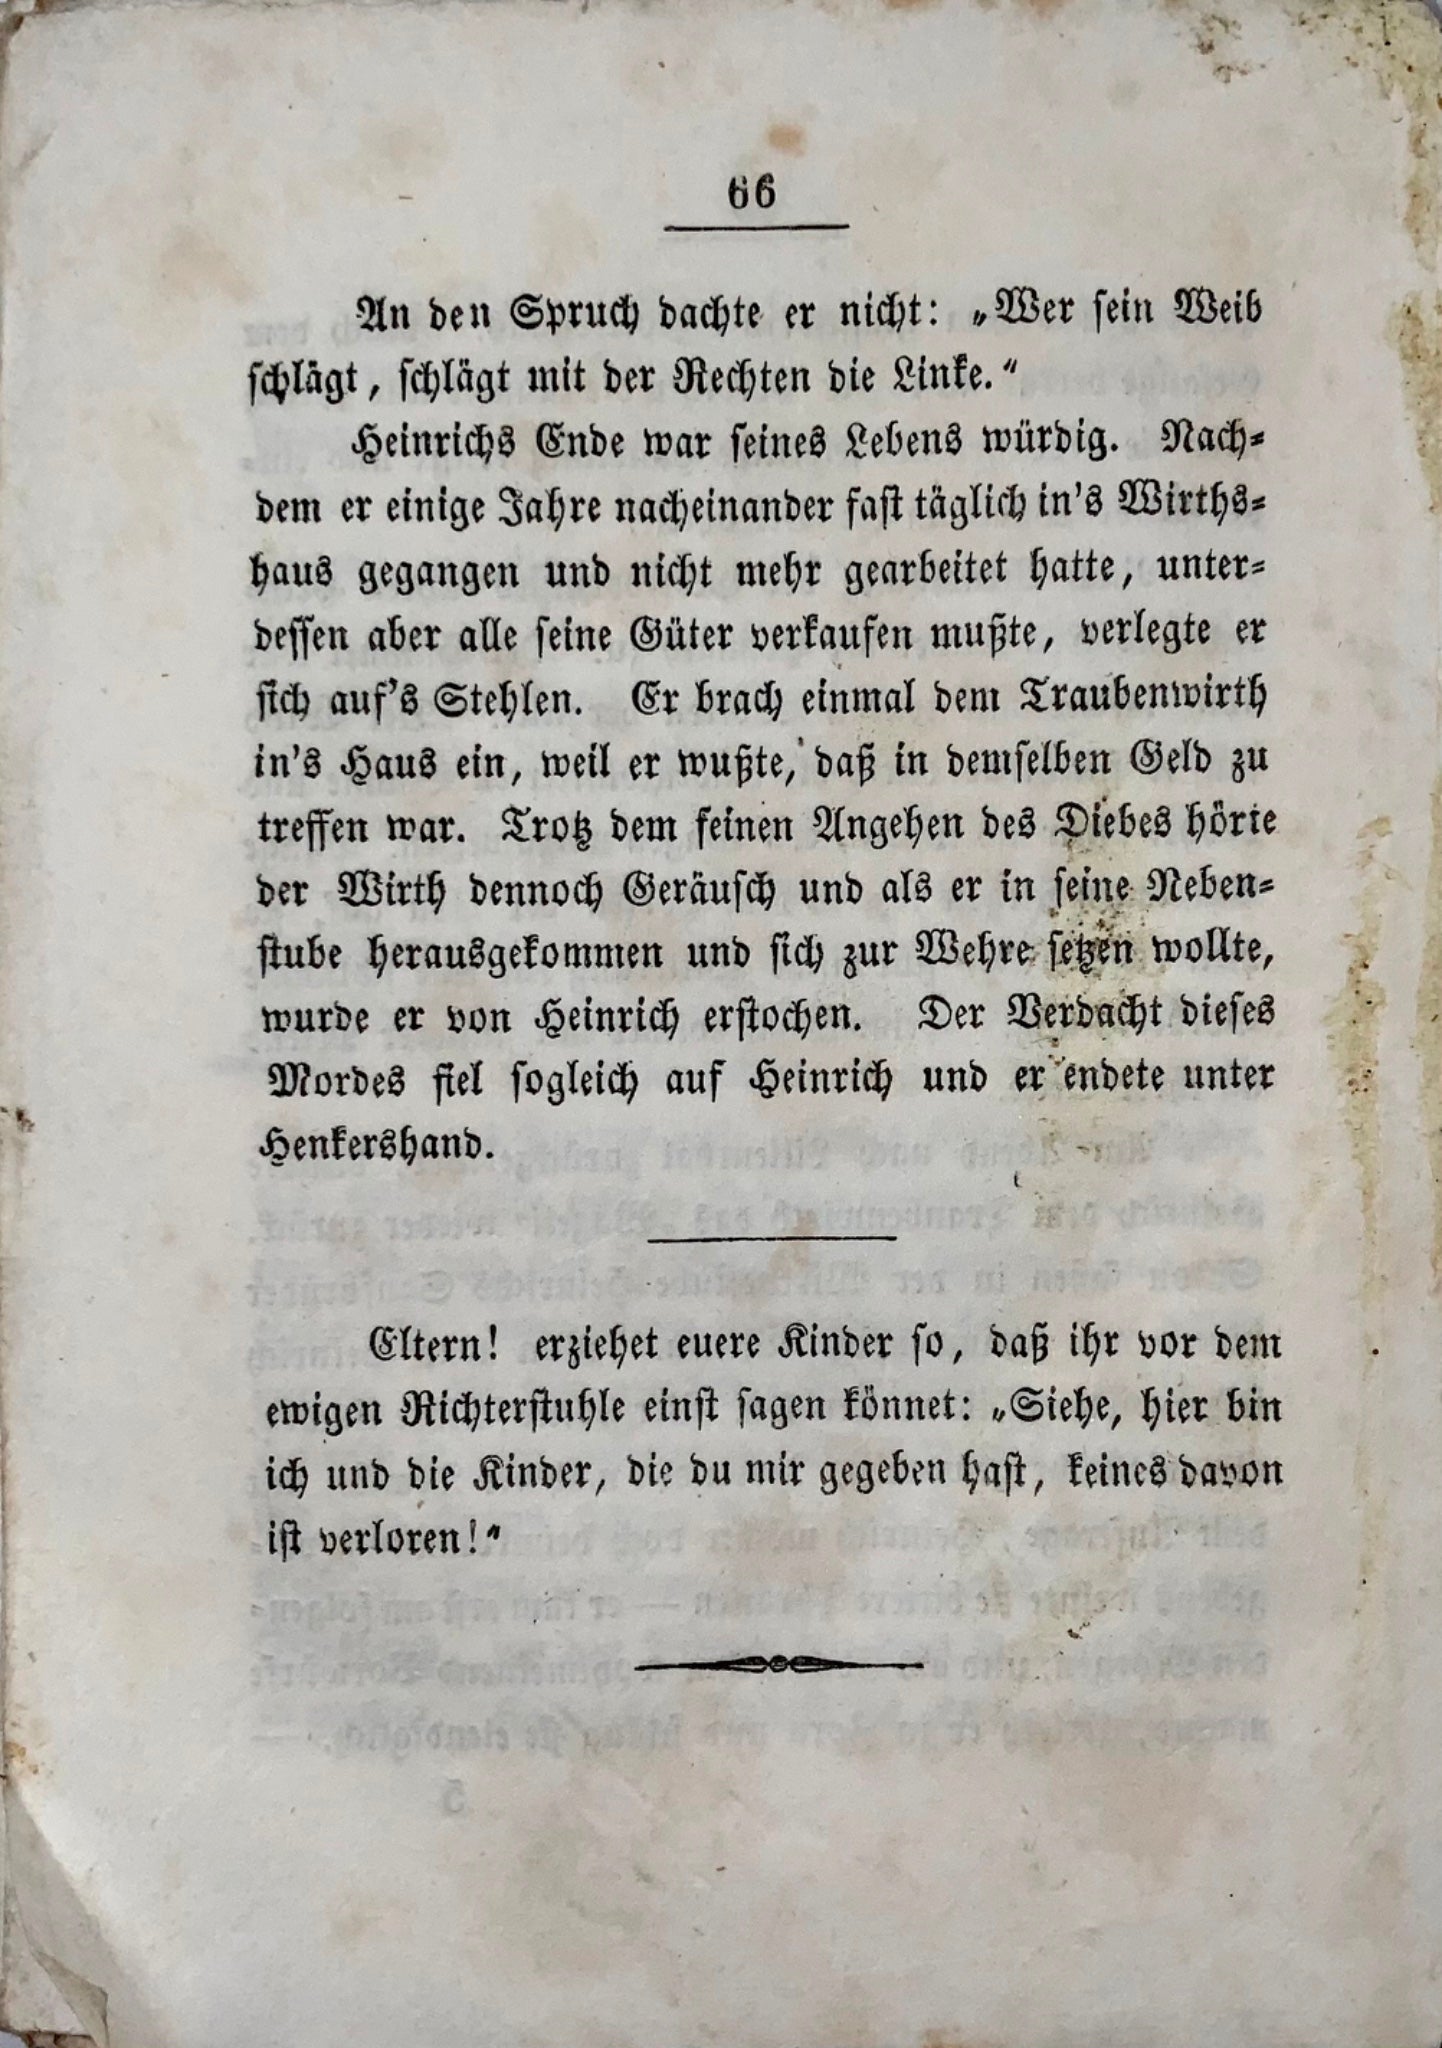 1847 Juvénile. Heinrich Gotterbarm. Un récit édifiant pour une mauvaise parentalité. Helvétique.